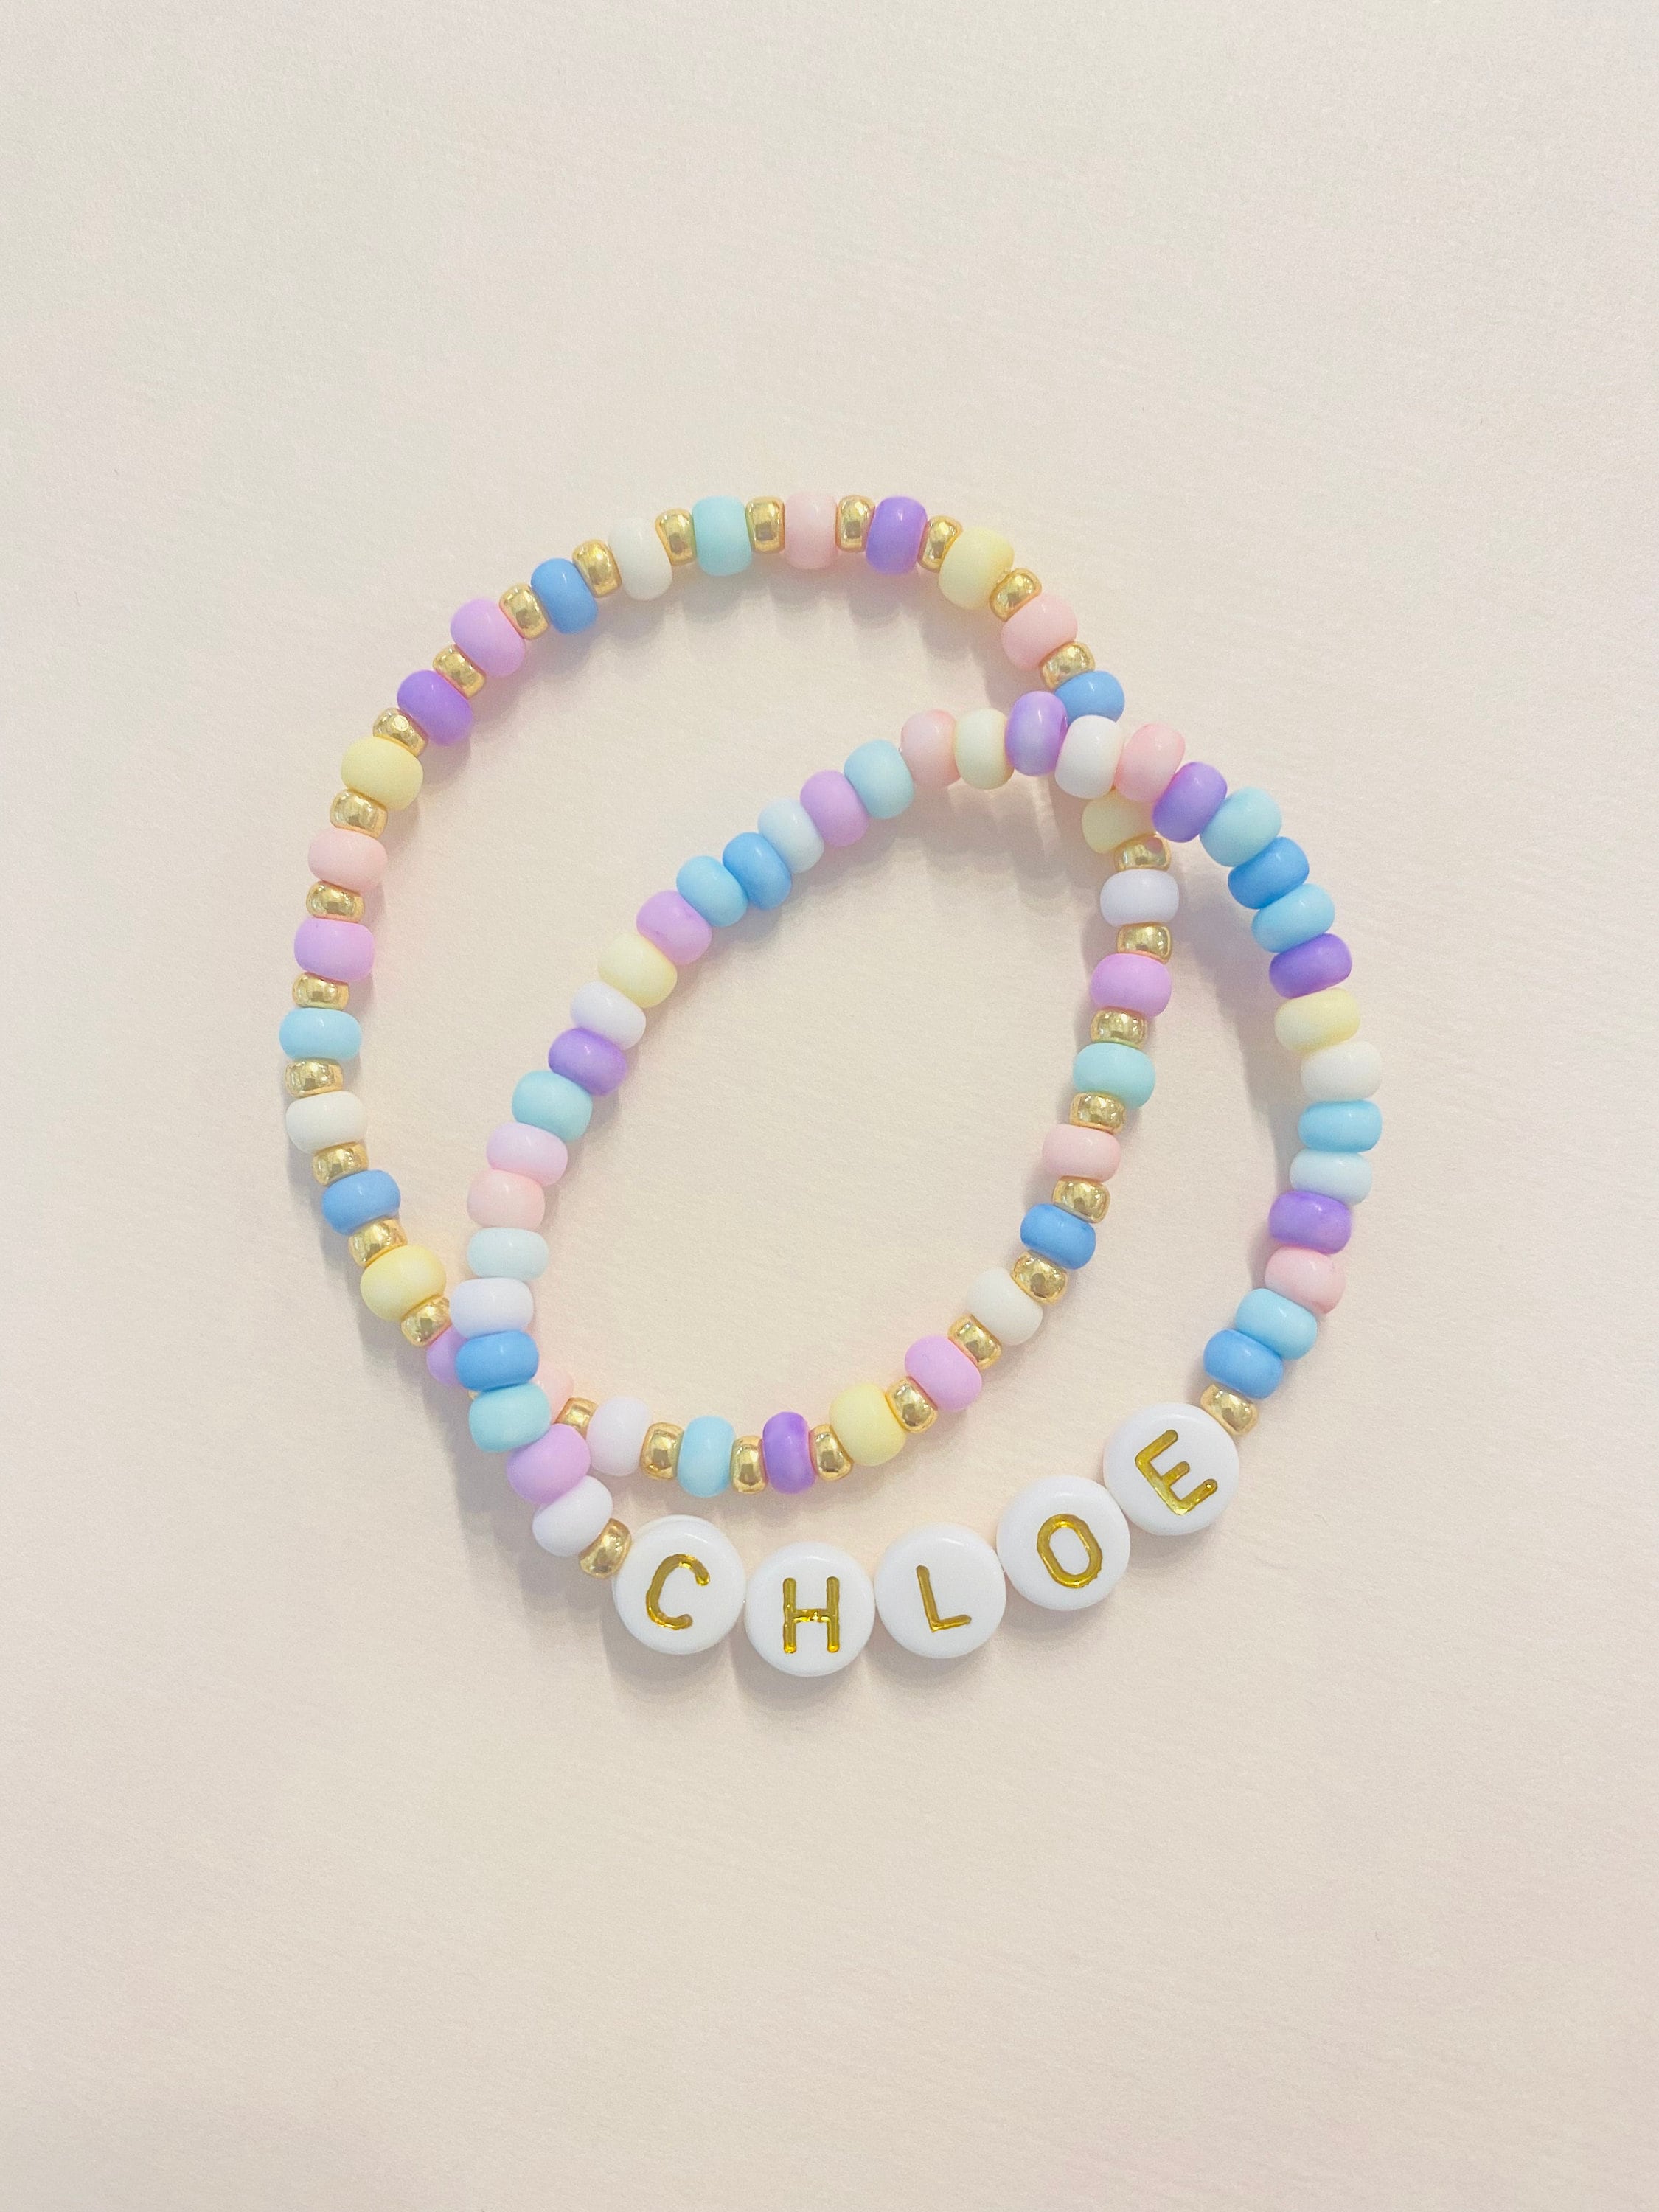 Colourful Toddler Bracelet Making Kit, Pop Bead Girls Princess